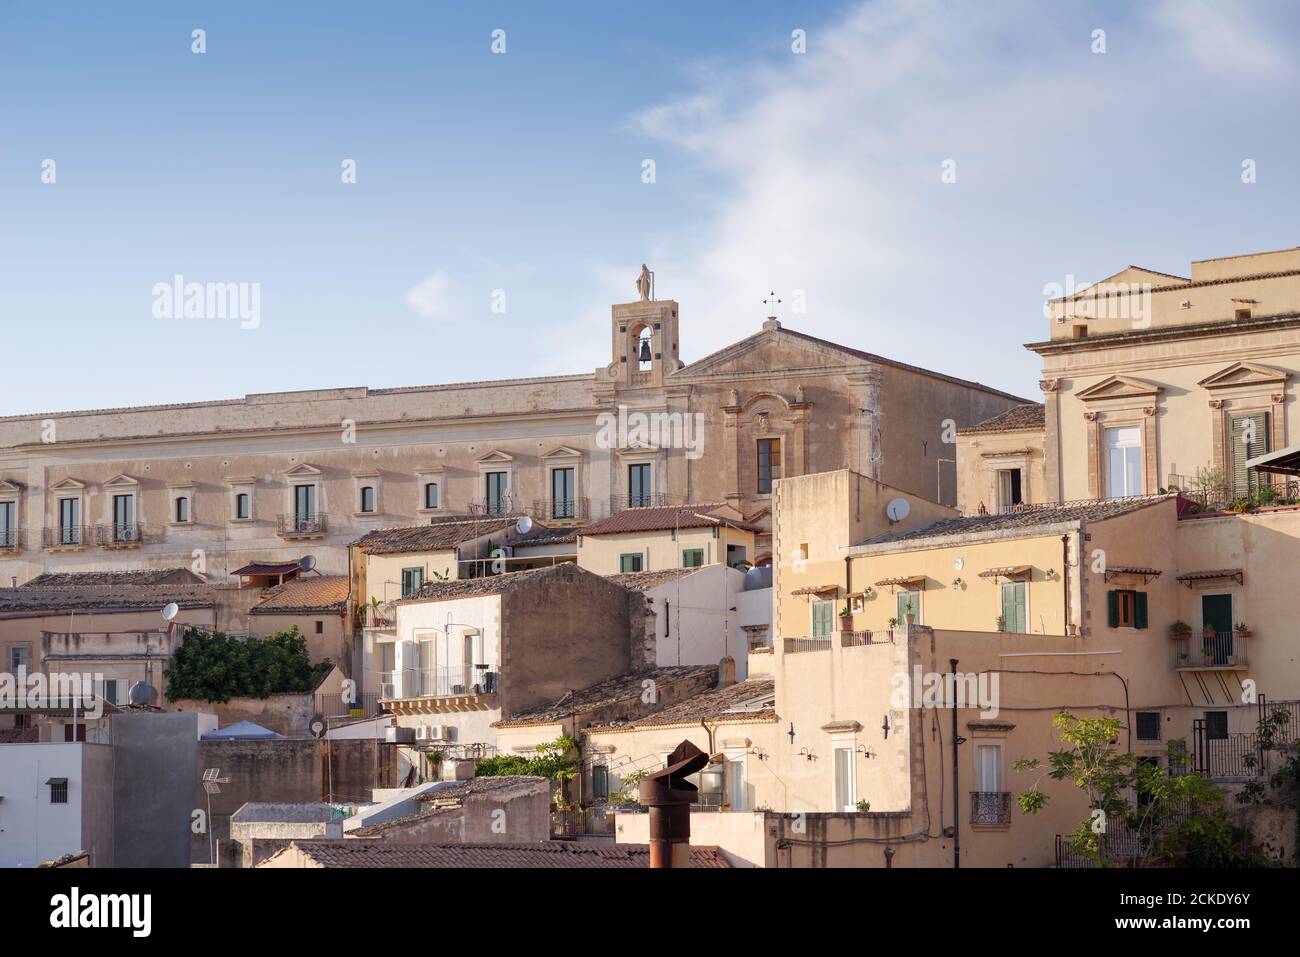 Bâtiments historiques à Noto, dans la lumière de l'après-midi - Sicile, Italie Banque D'Images